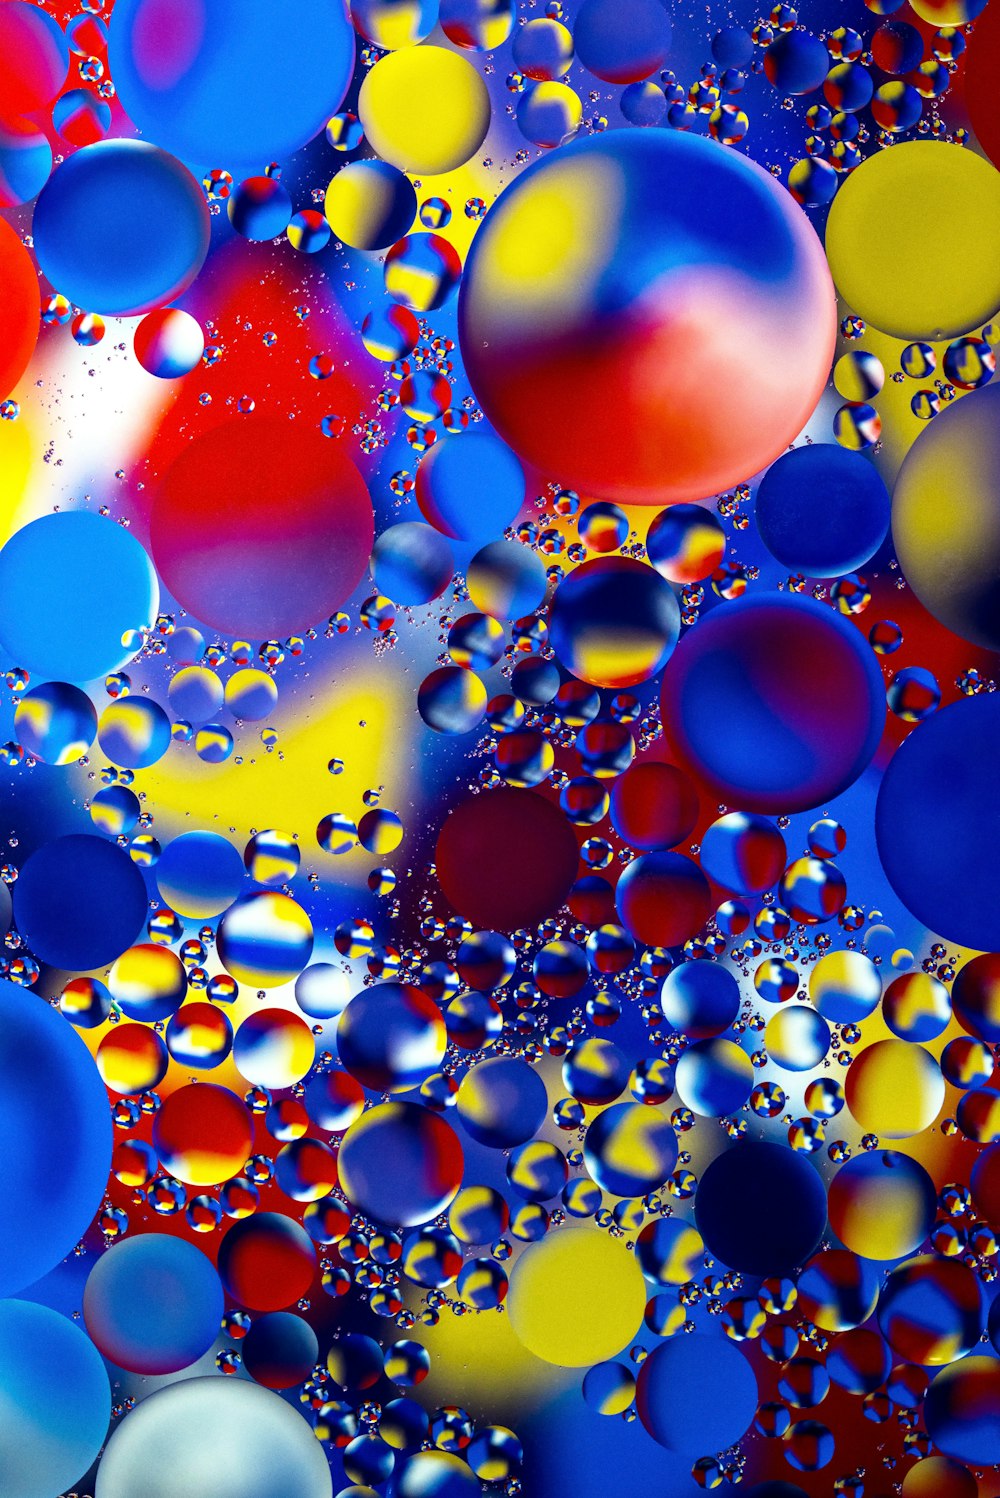 Burbujas multicolores